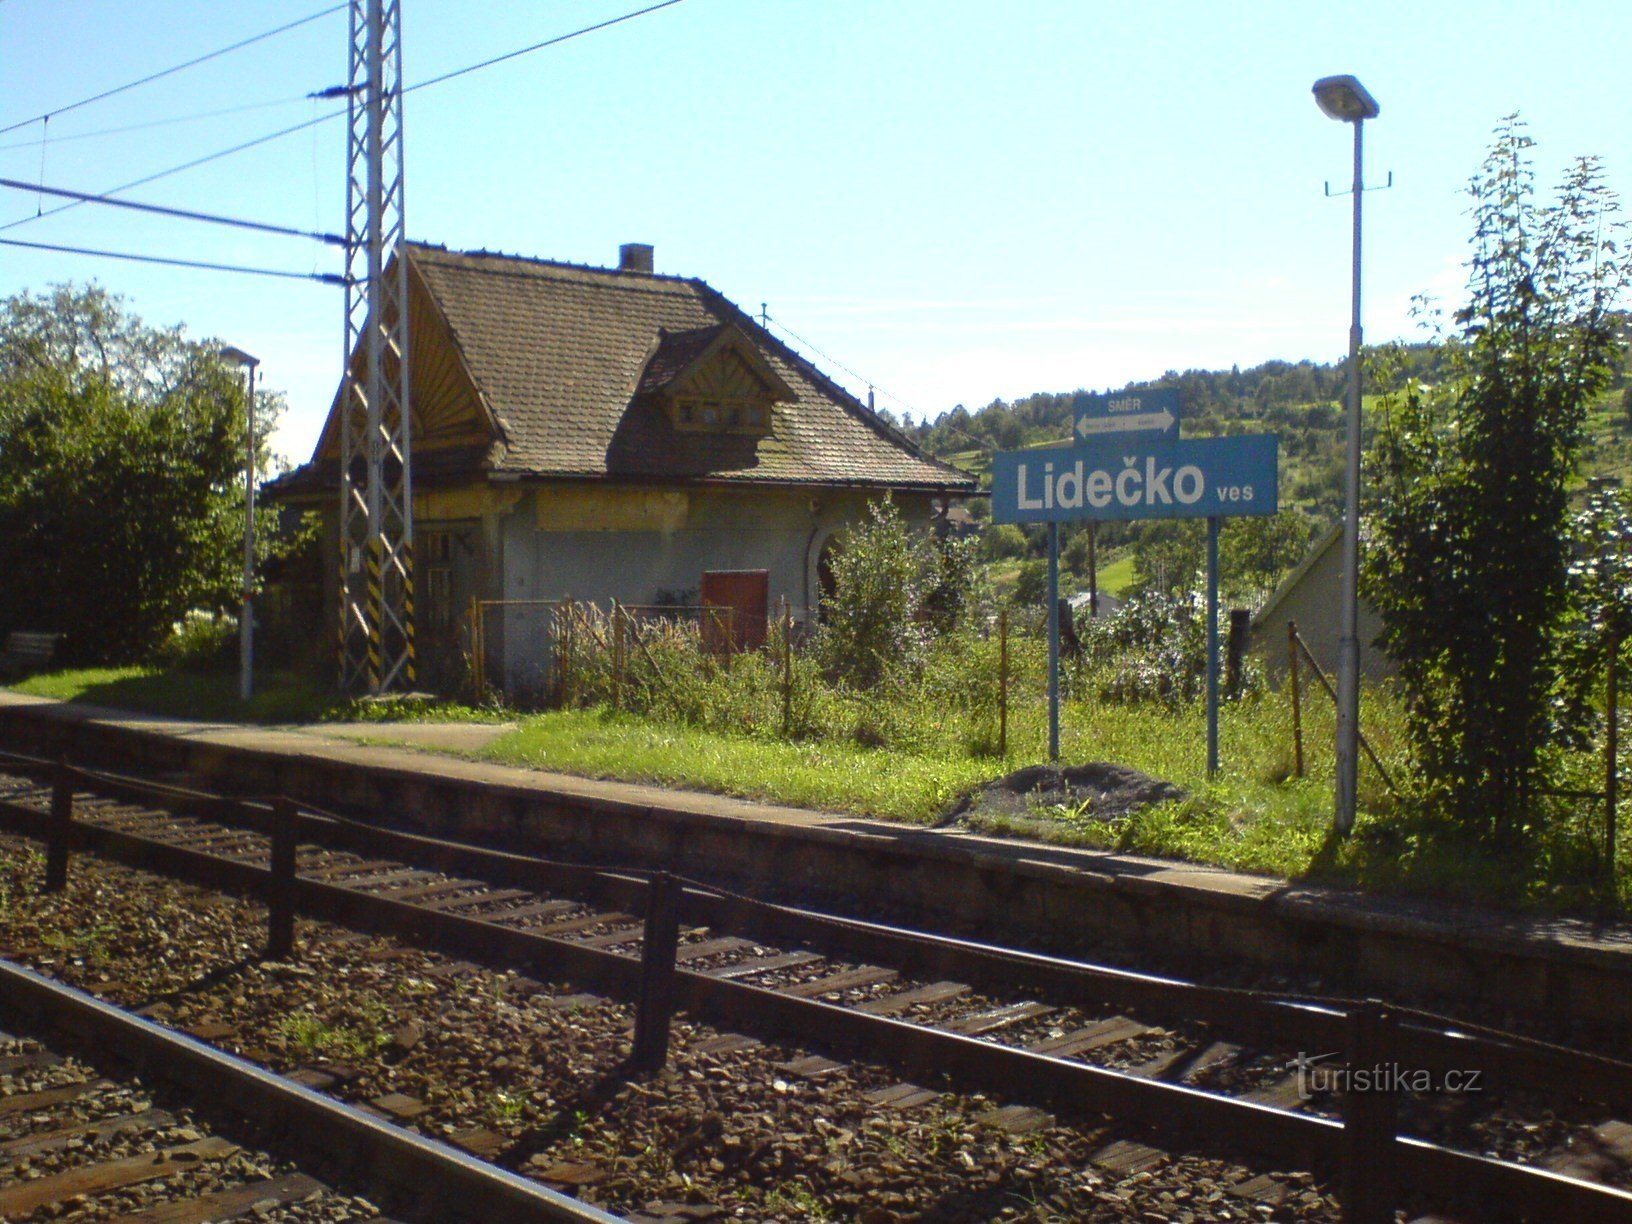 Деревня Лидечко - железнодорожная станция